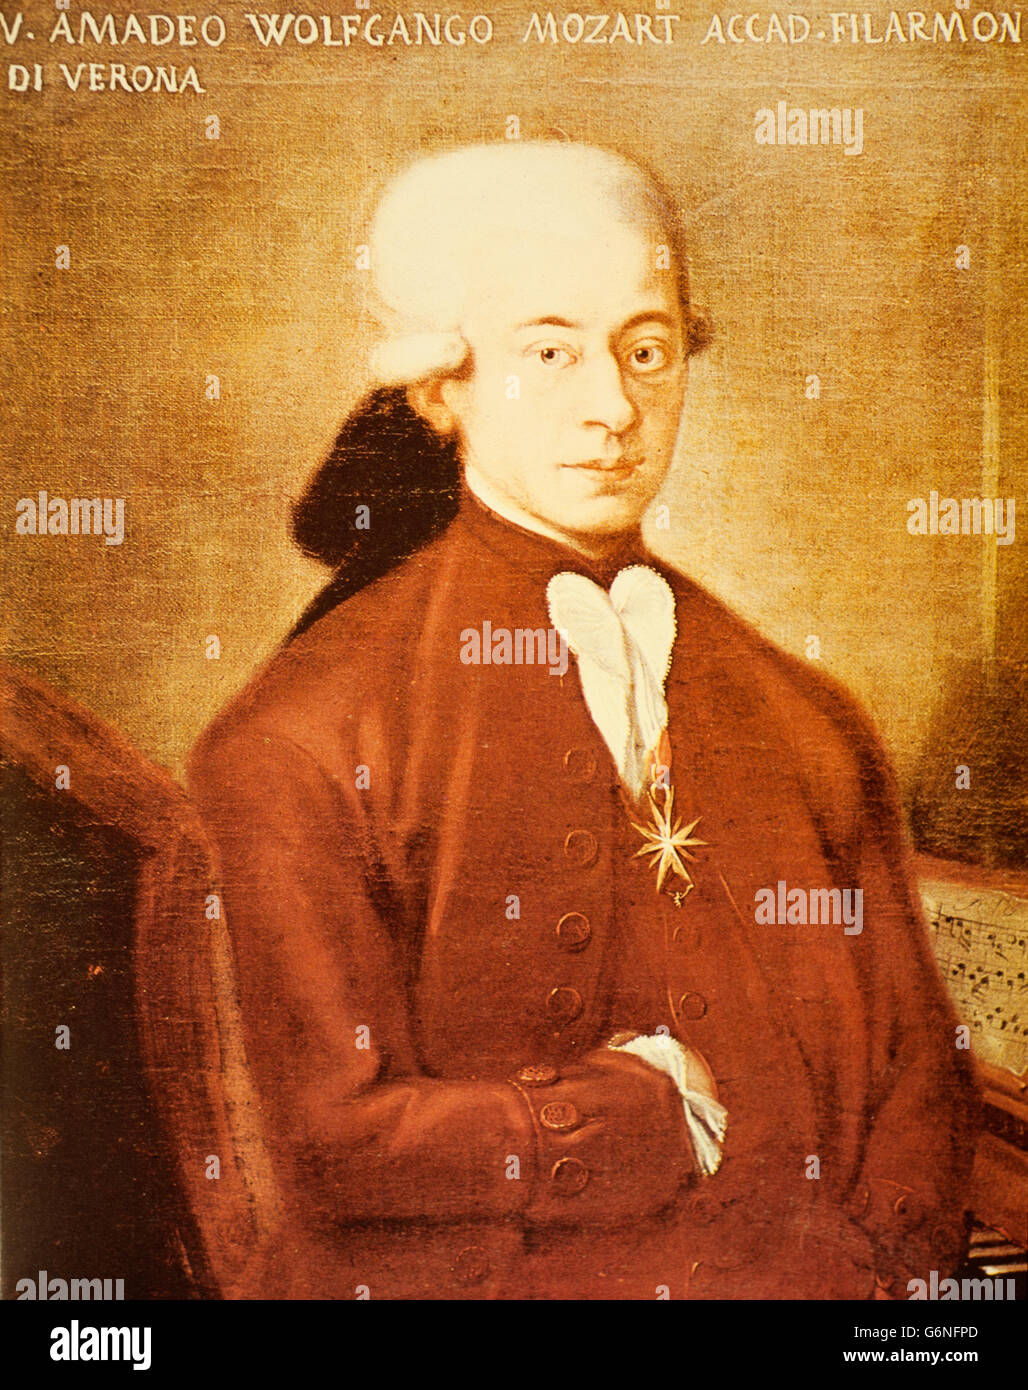 Wolfgang Amadeus Mozart, Taufnamen Joannes Chrysostomus Wolfgangus Theophilus Mozart (Salzburg, 27. Januar 1756 - Wien, 5. Dezember 1791), war Komponist, Pianist, Organist, Geiger und Cembalist österreichischen Stockfoto